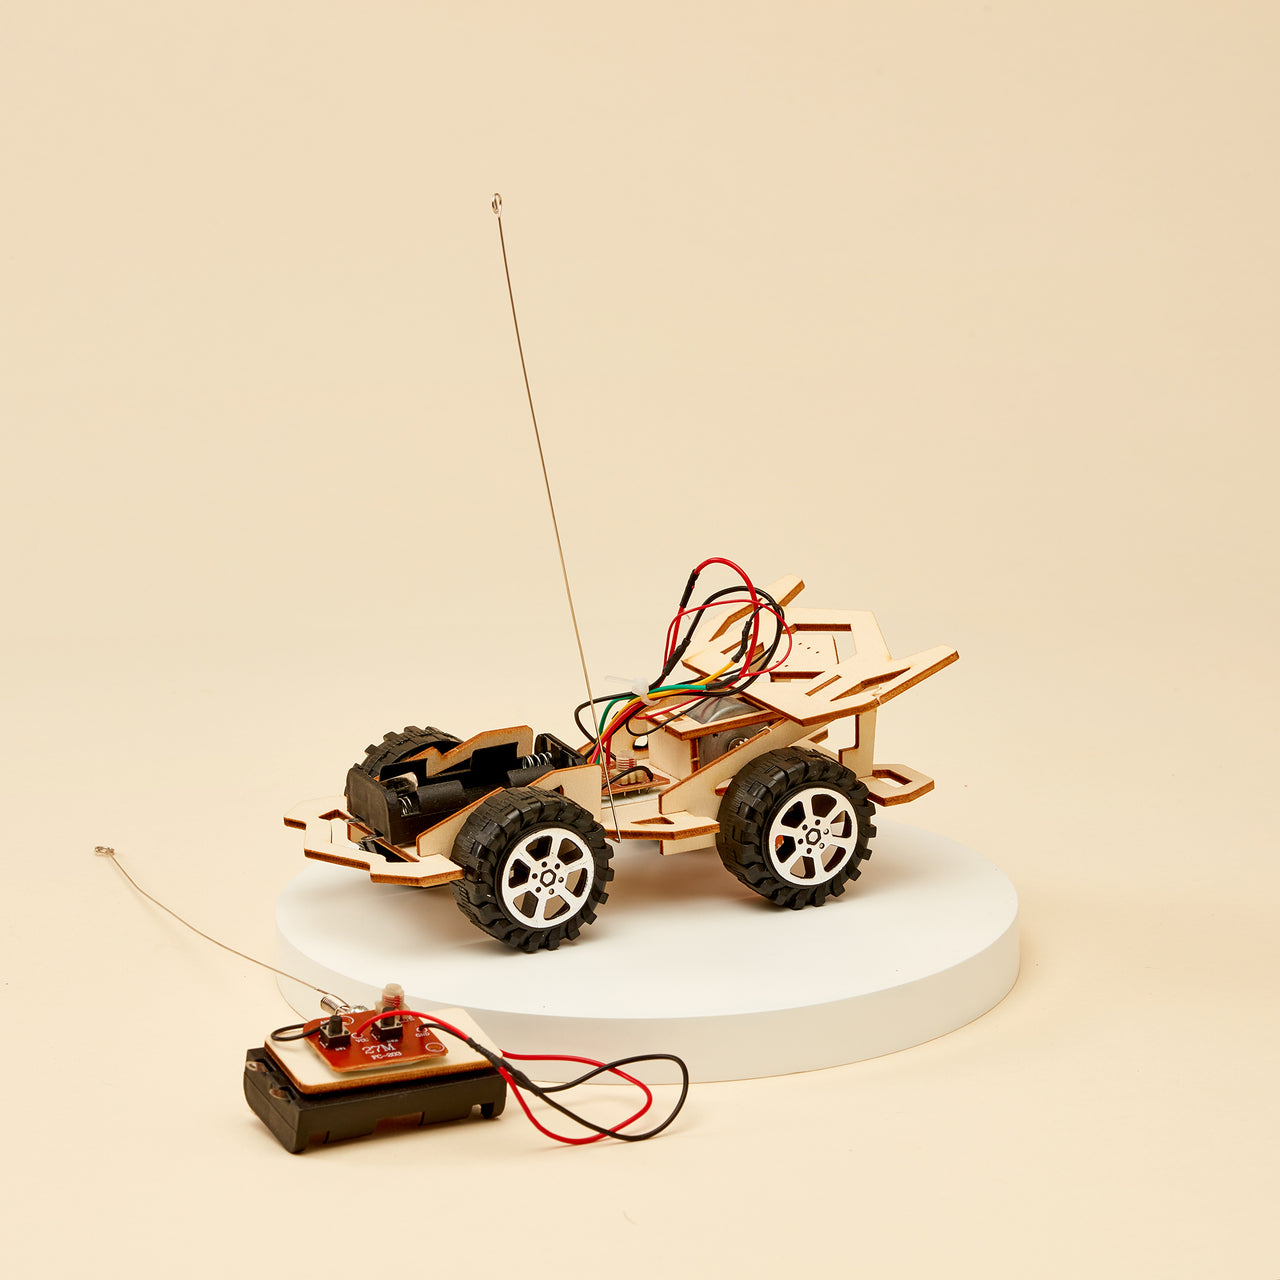 Kit de bricolage pour voiture radiocommandée CreateKit